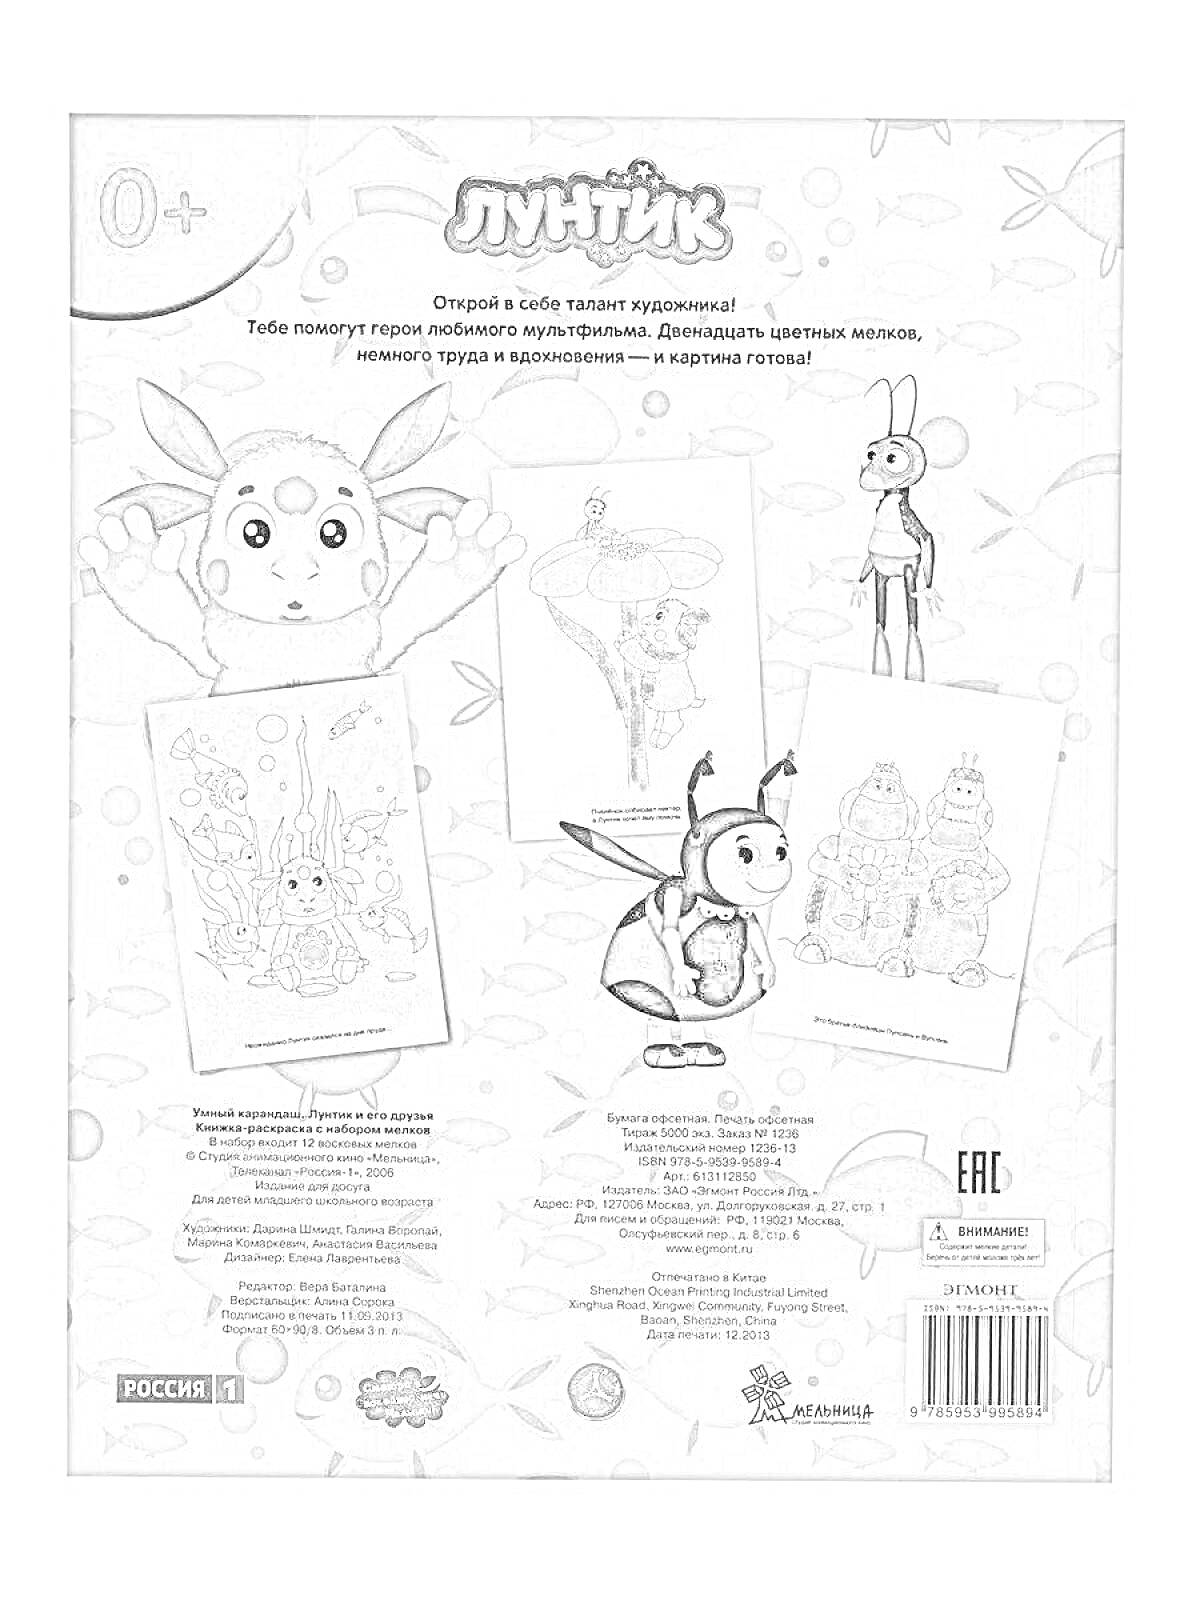 Раскраска Лунтик. Раскраска для детей с изображением Лунтика, бабочки, крапивника и различных сцен из мультфильма